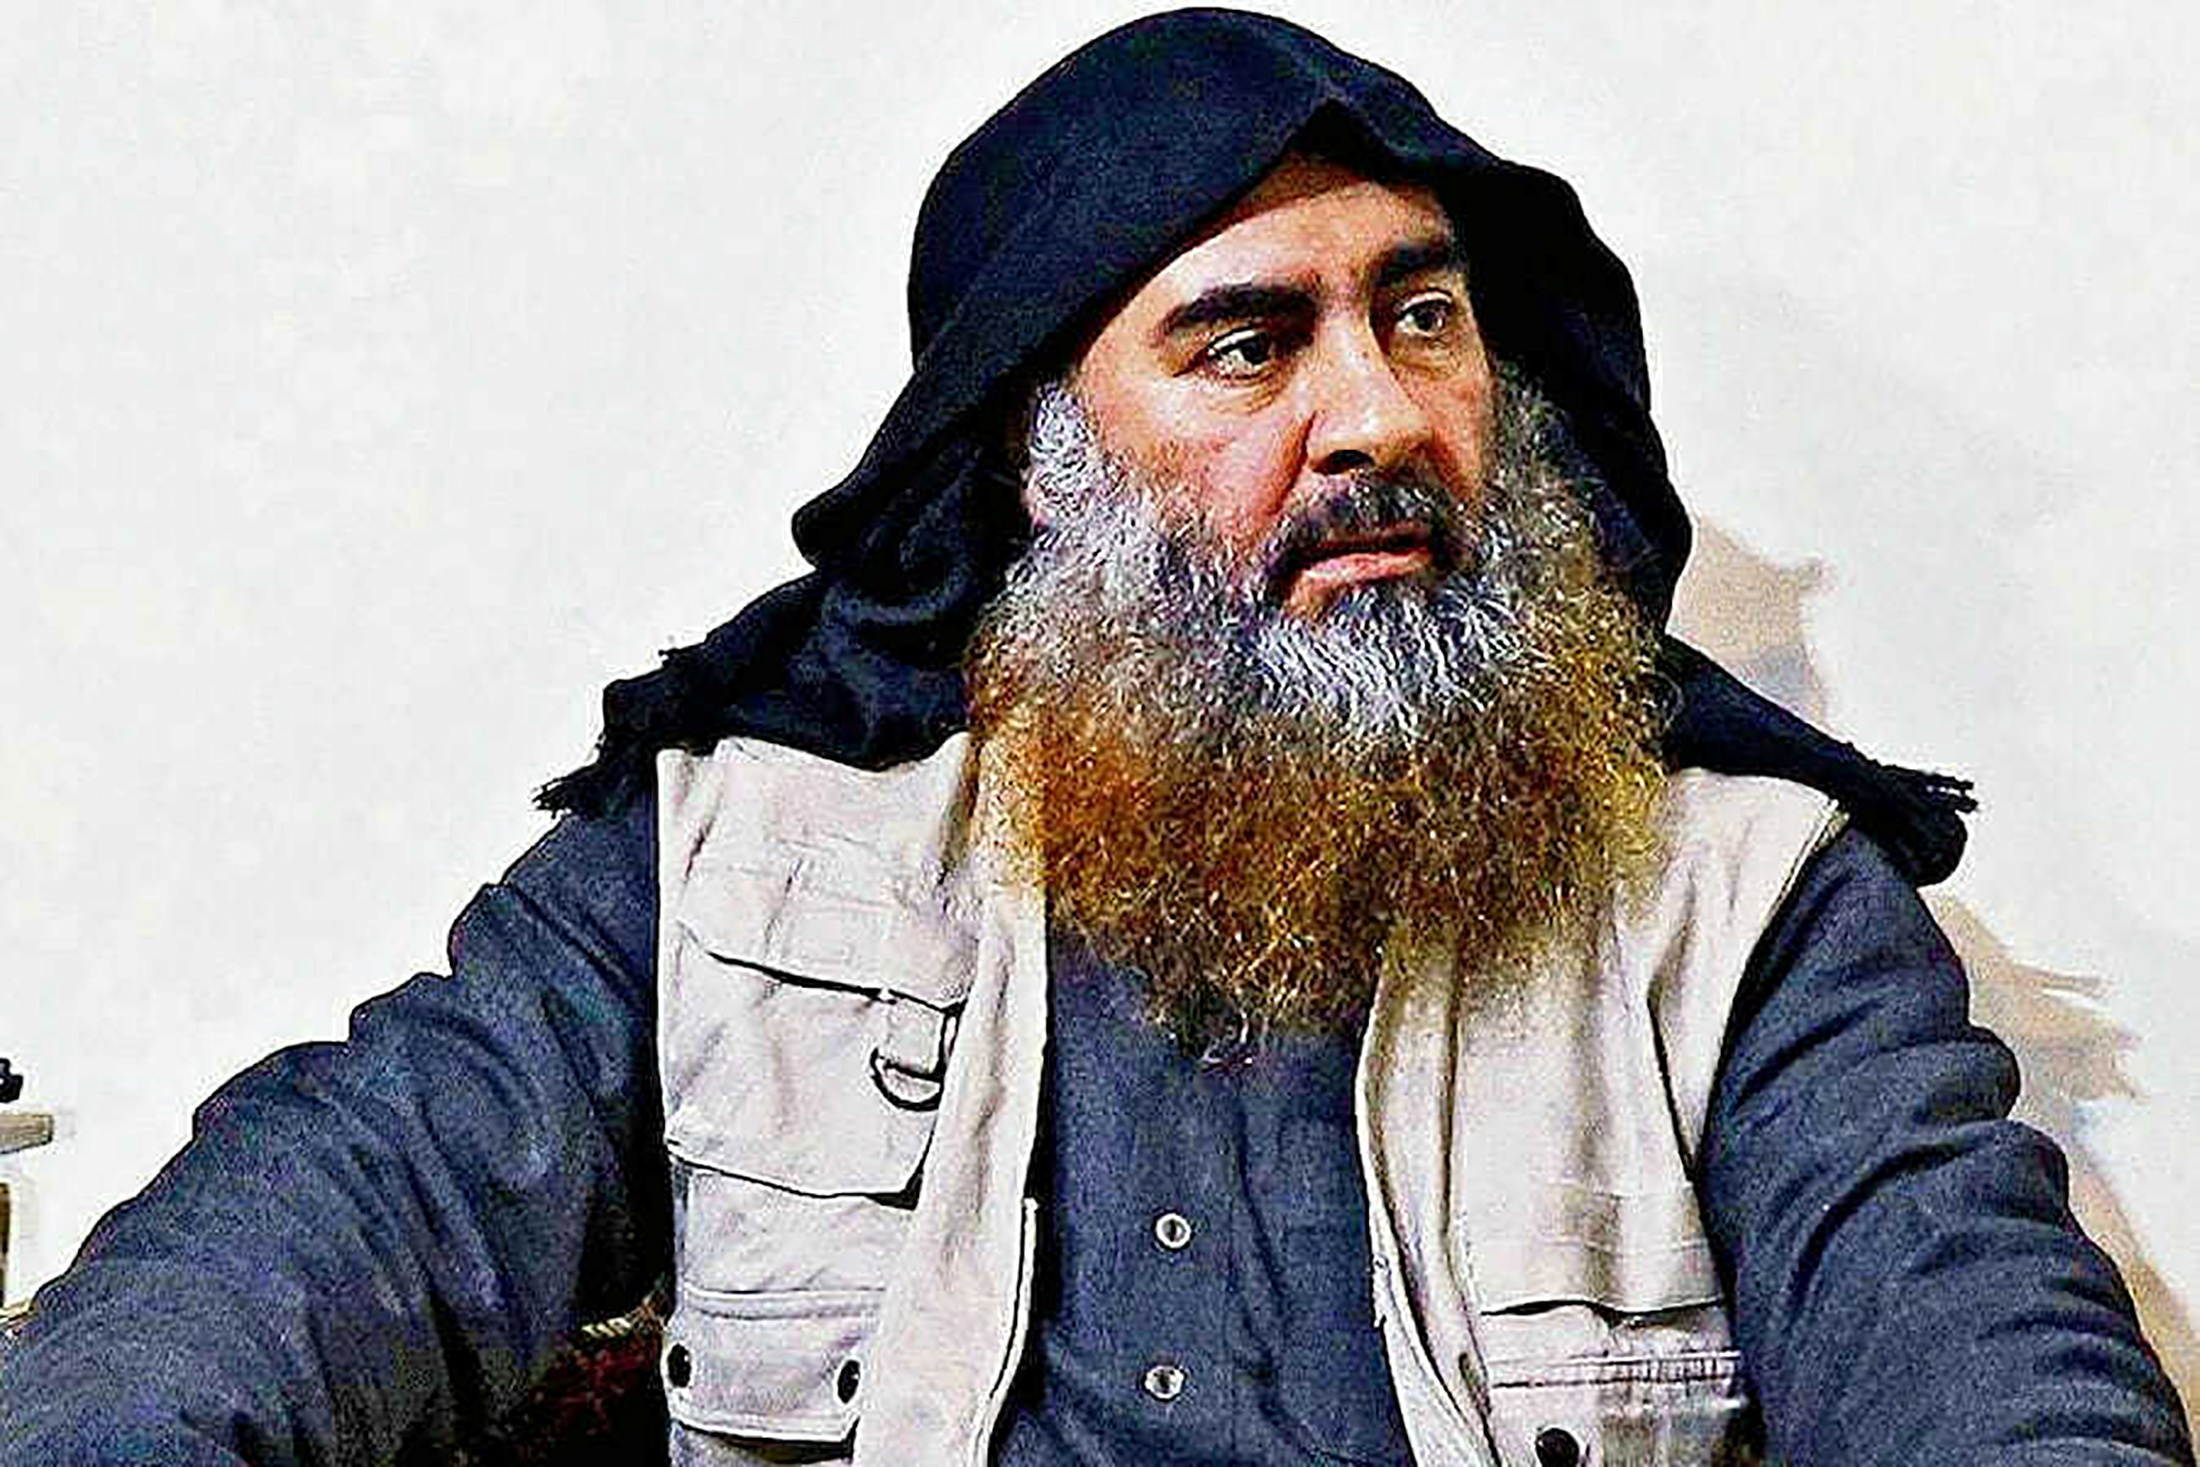 El Estado Islámico confirma la muerte de Al Baghdadi y nombra a su nuevo líder